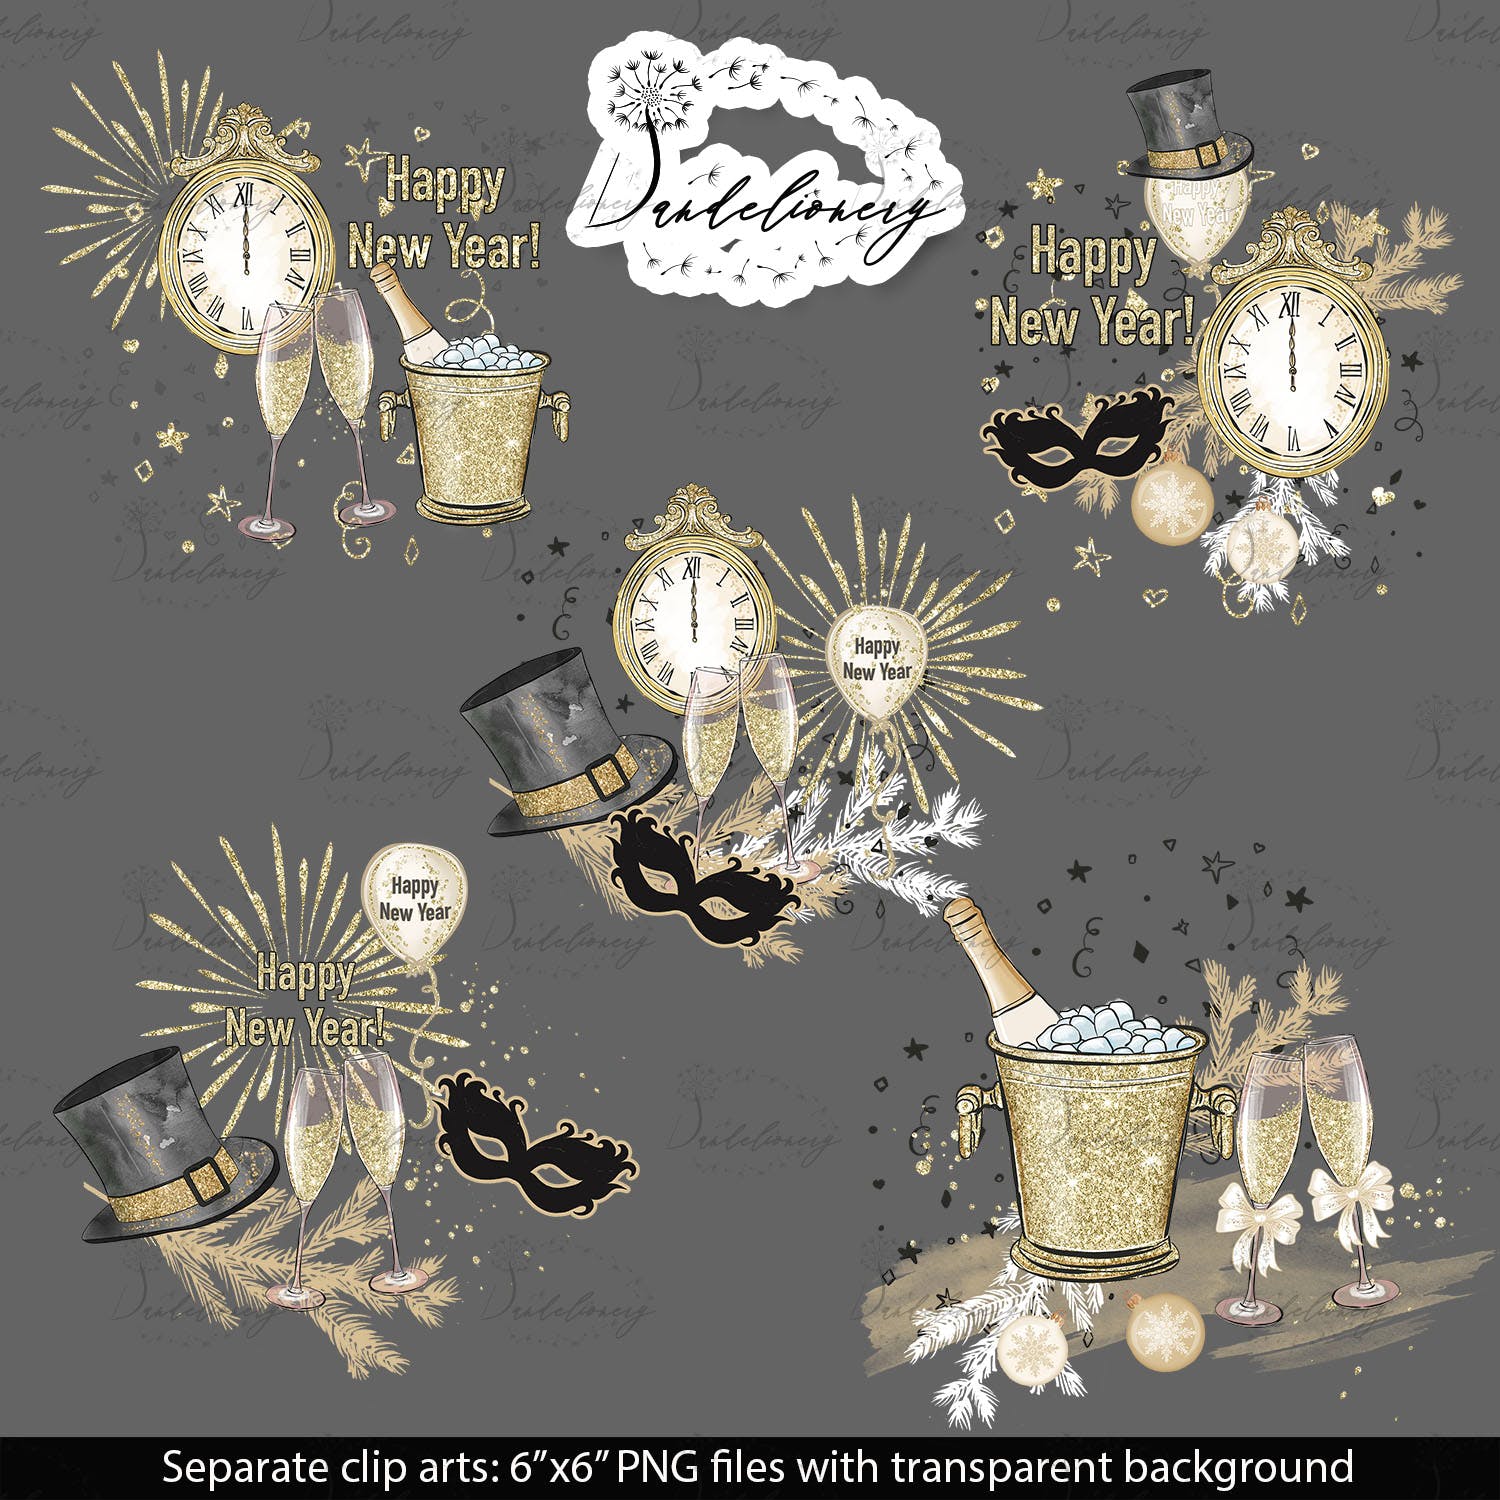 派对时光主题水彩手绘图案大洋岛精选设计素材 Party Time design插图4